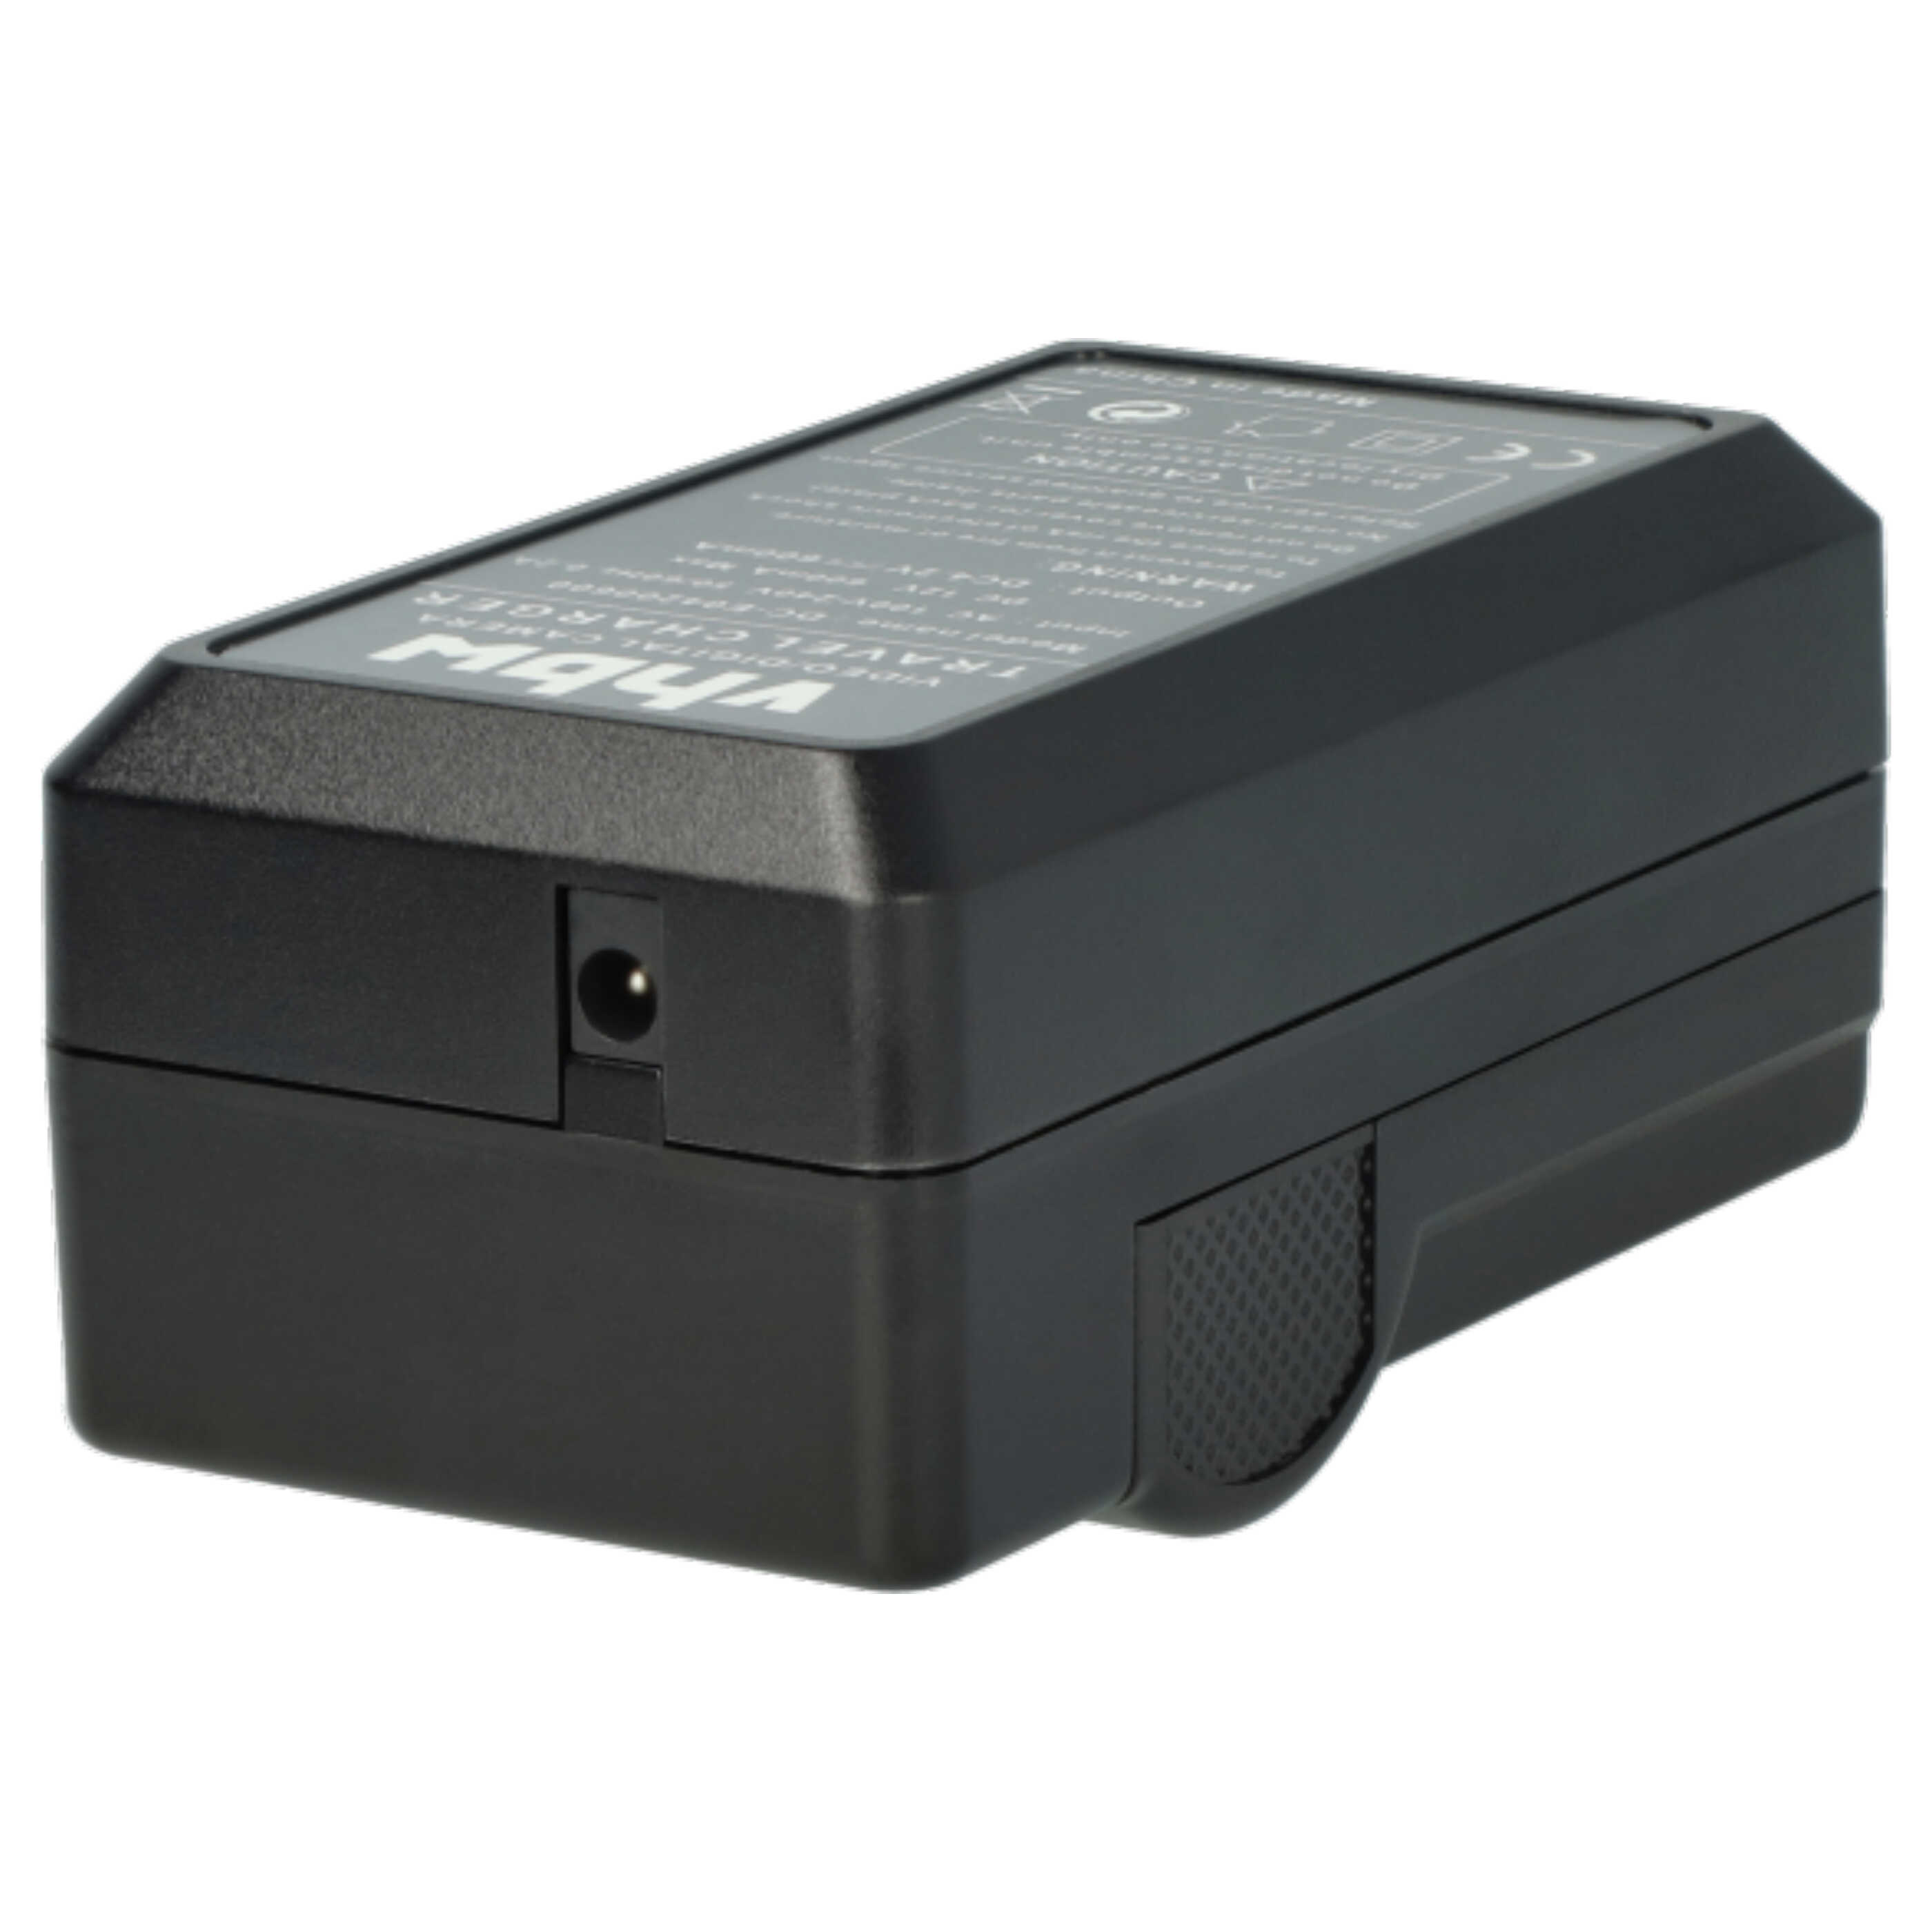 Akku Ladegerät passend für EasyShare M215 Kamera u.a. - 0,6 A, 4,2 V